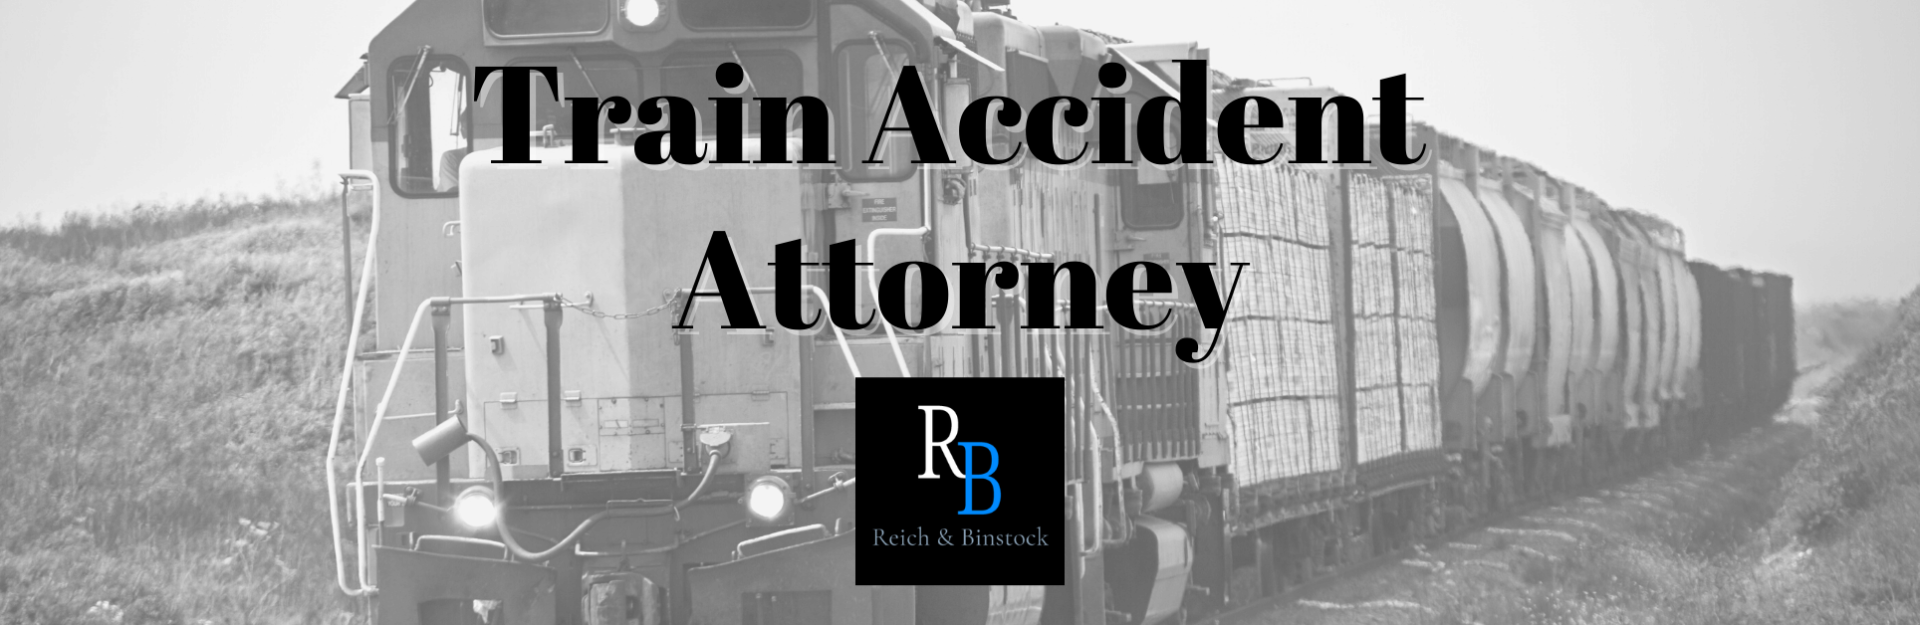 houston accident attorney